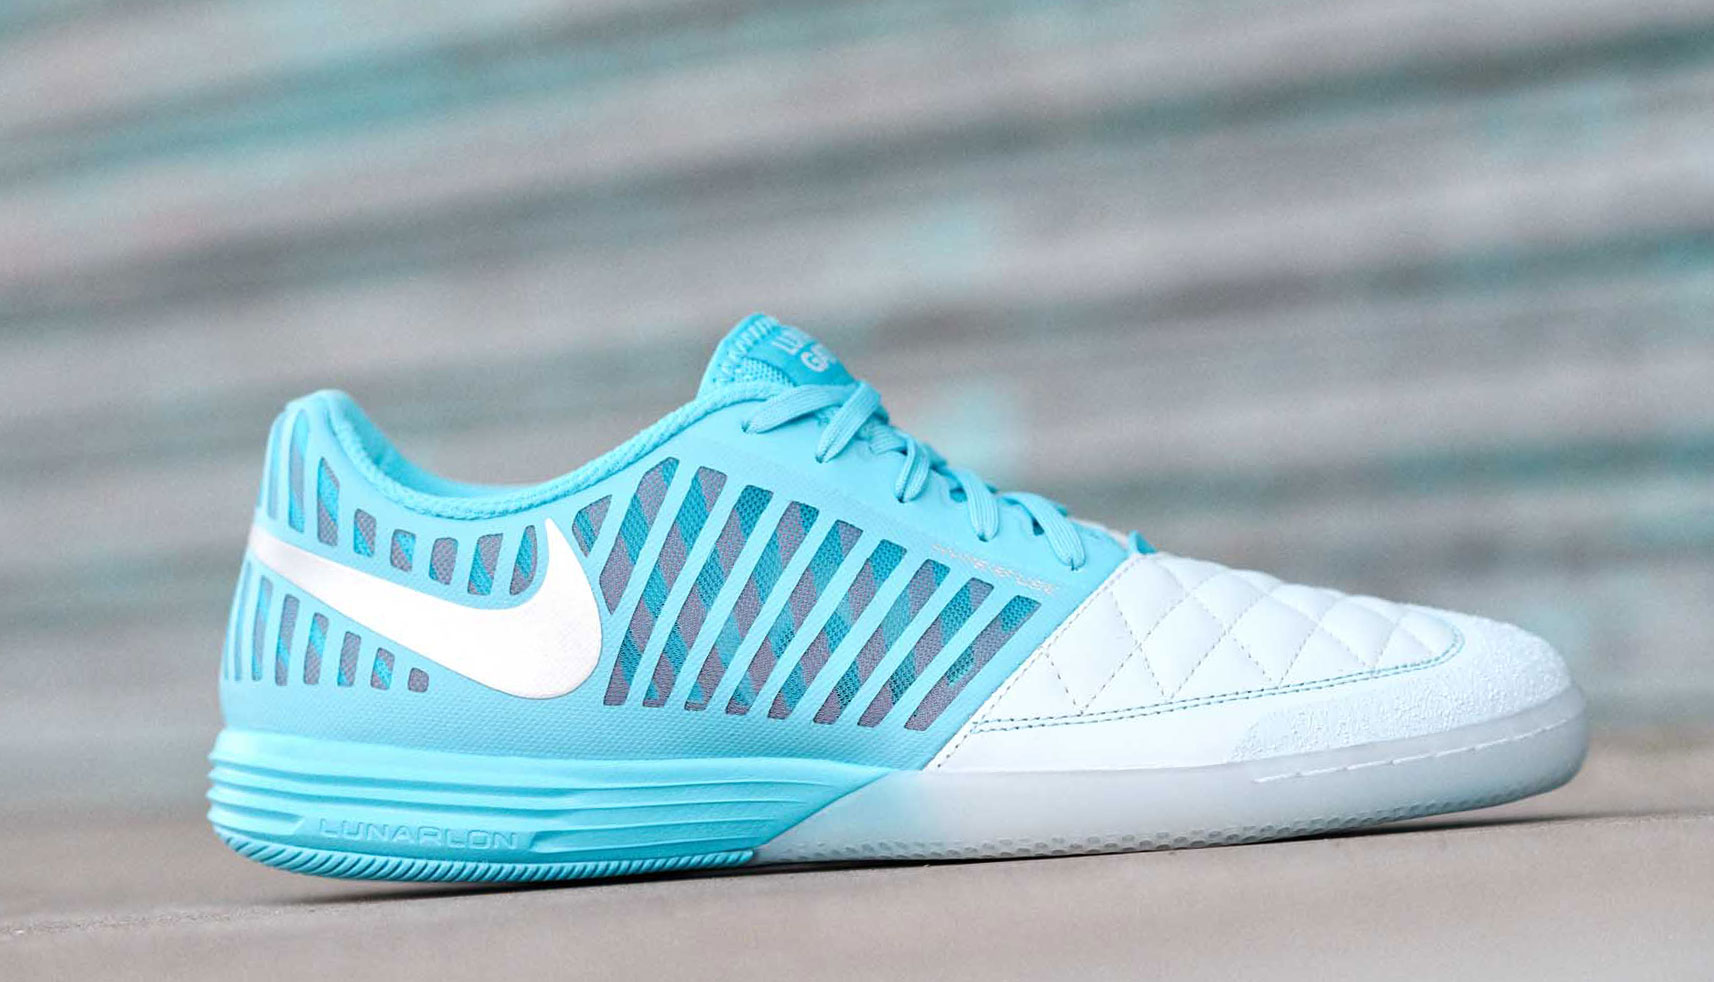 Nike анонсируют релиз новой расцветки футбольных кроссовок Lunar Gato II "Blue/Metallic Silver"